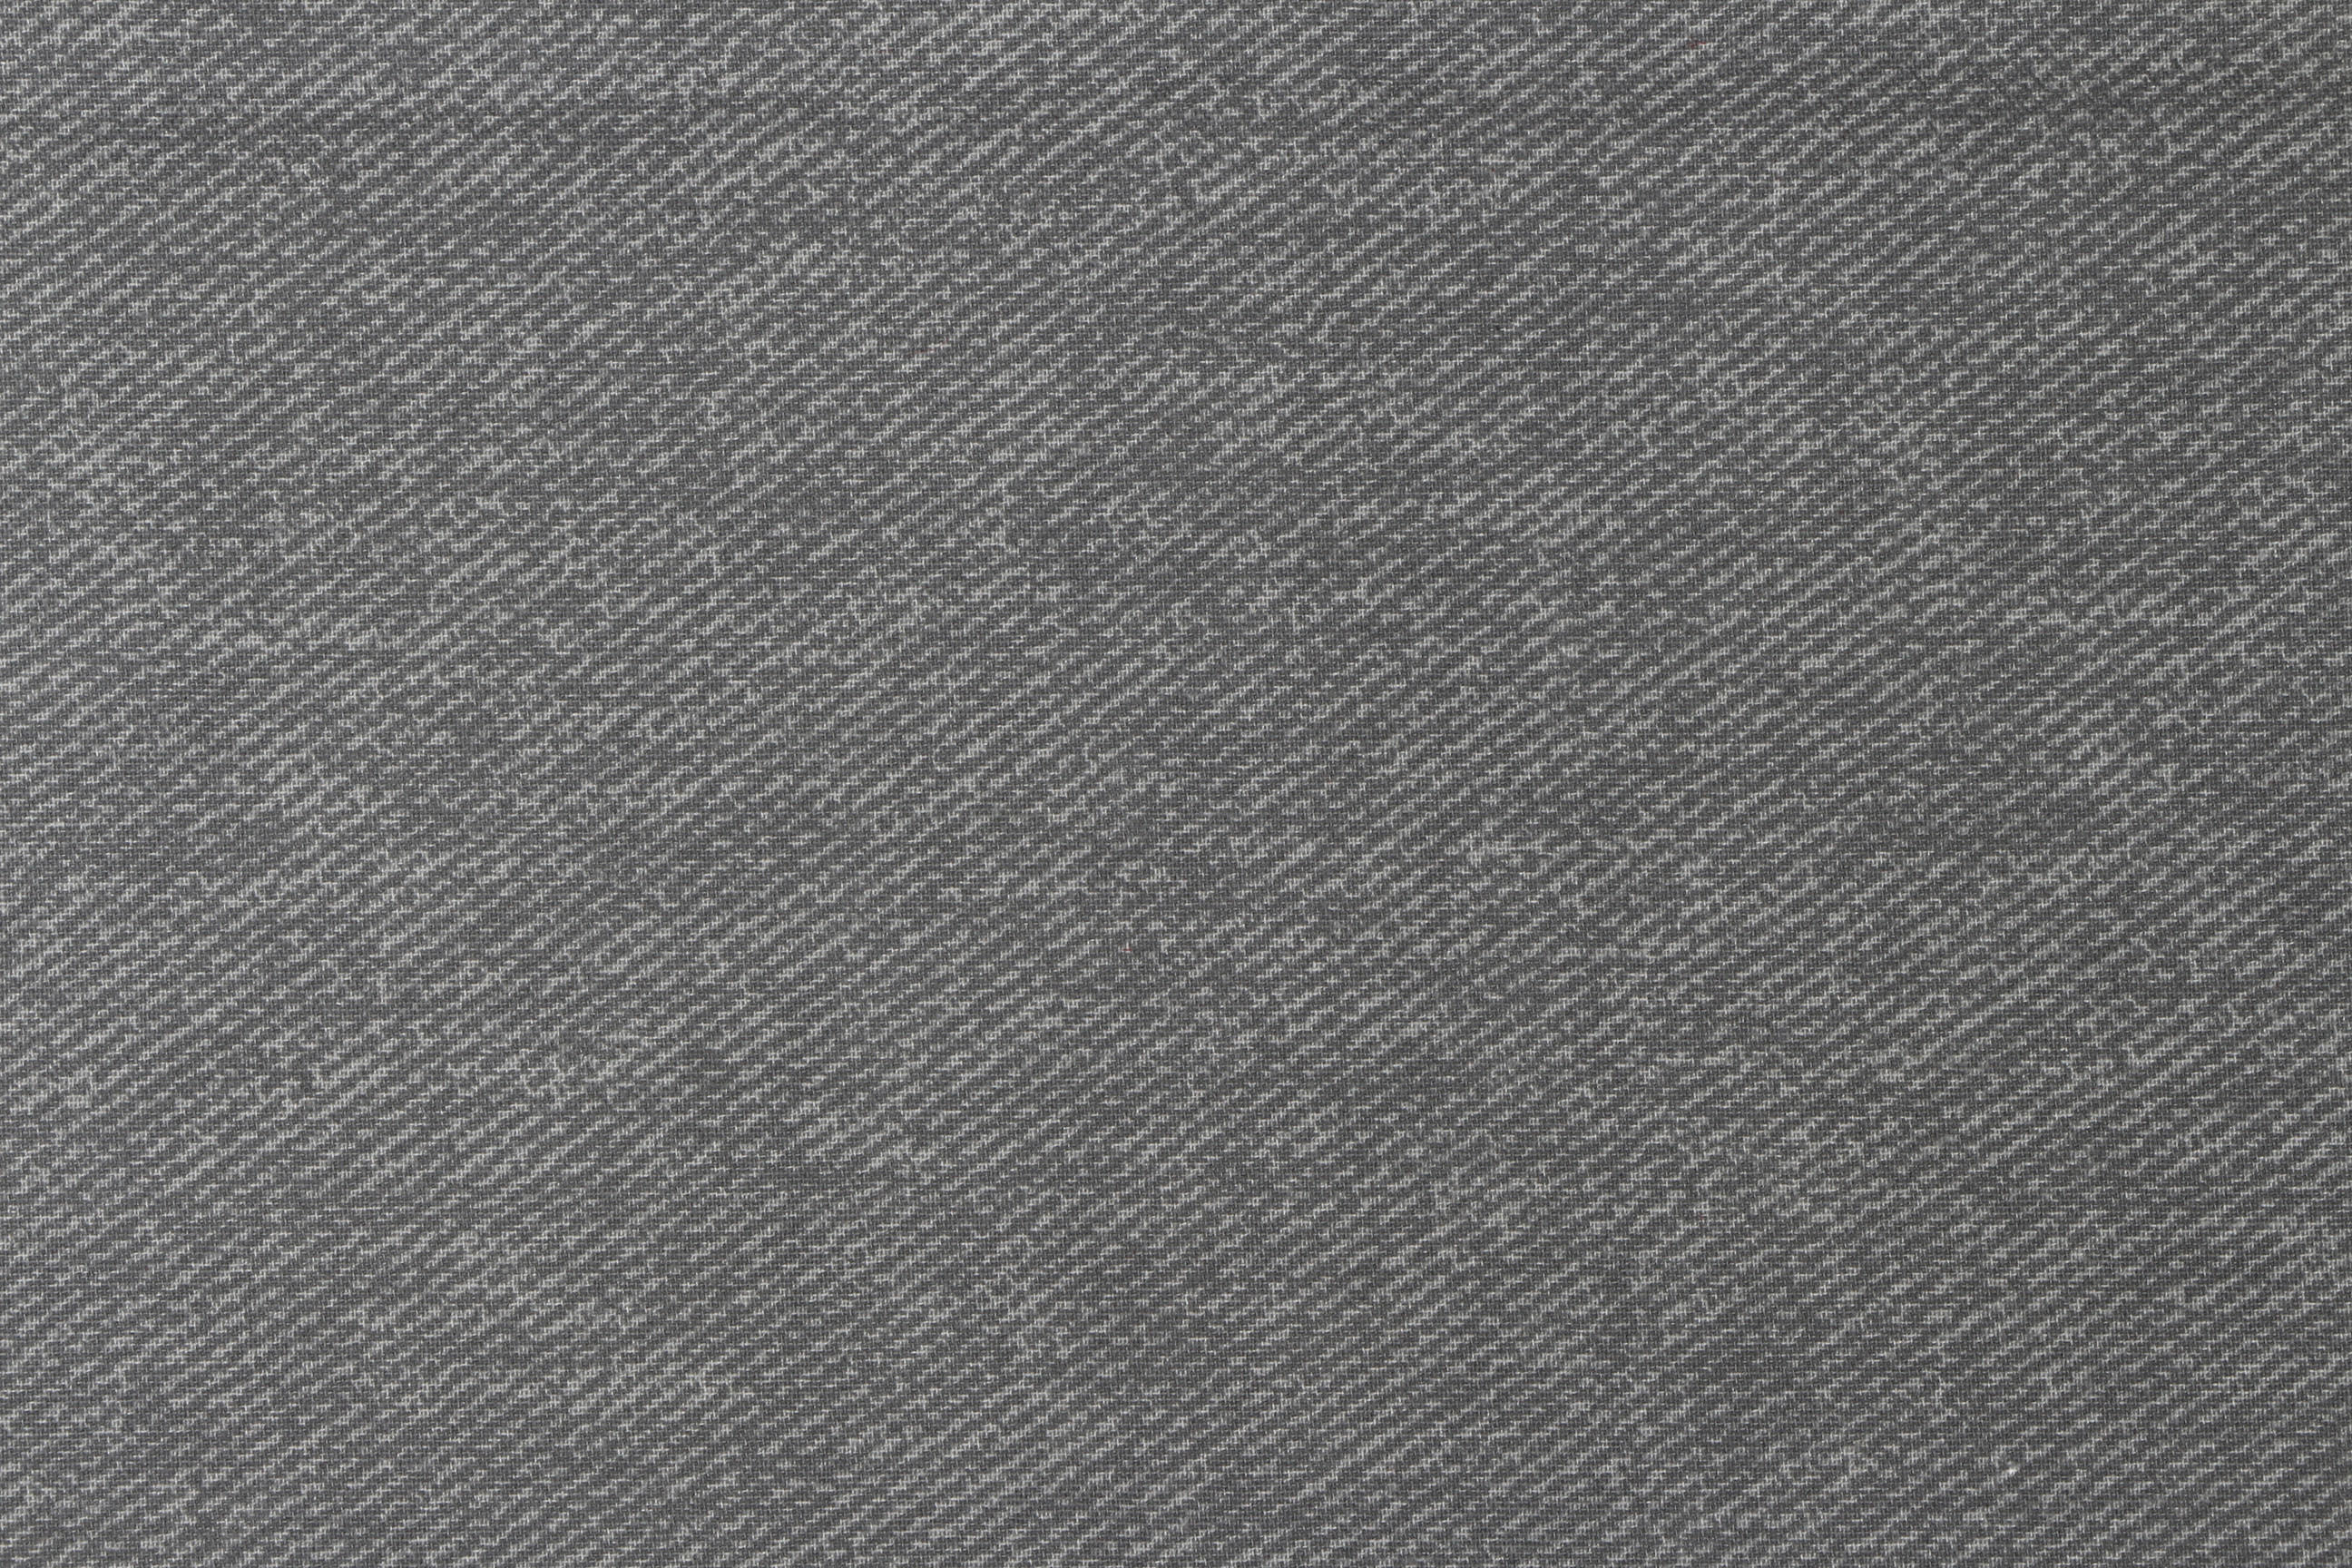 BANKAUFLAGE  Uni  - Grau, KONVENTIONELL, Textil (42/6/88cm) - Siena Garden